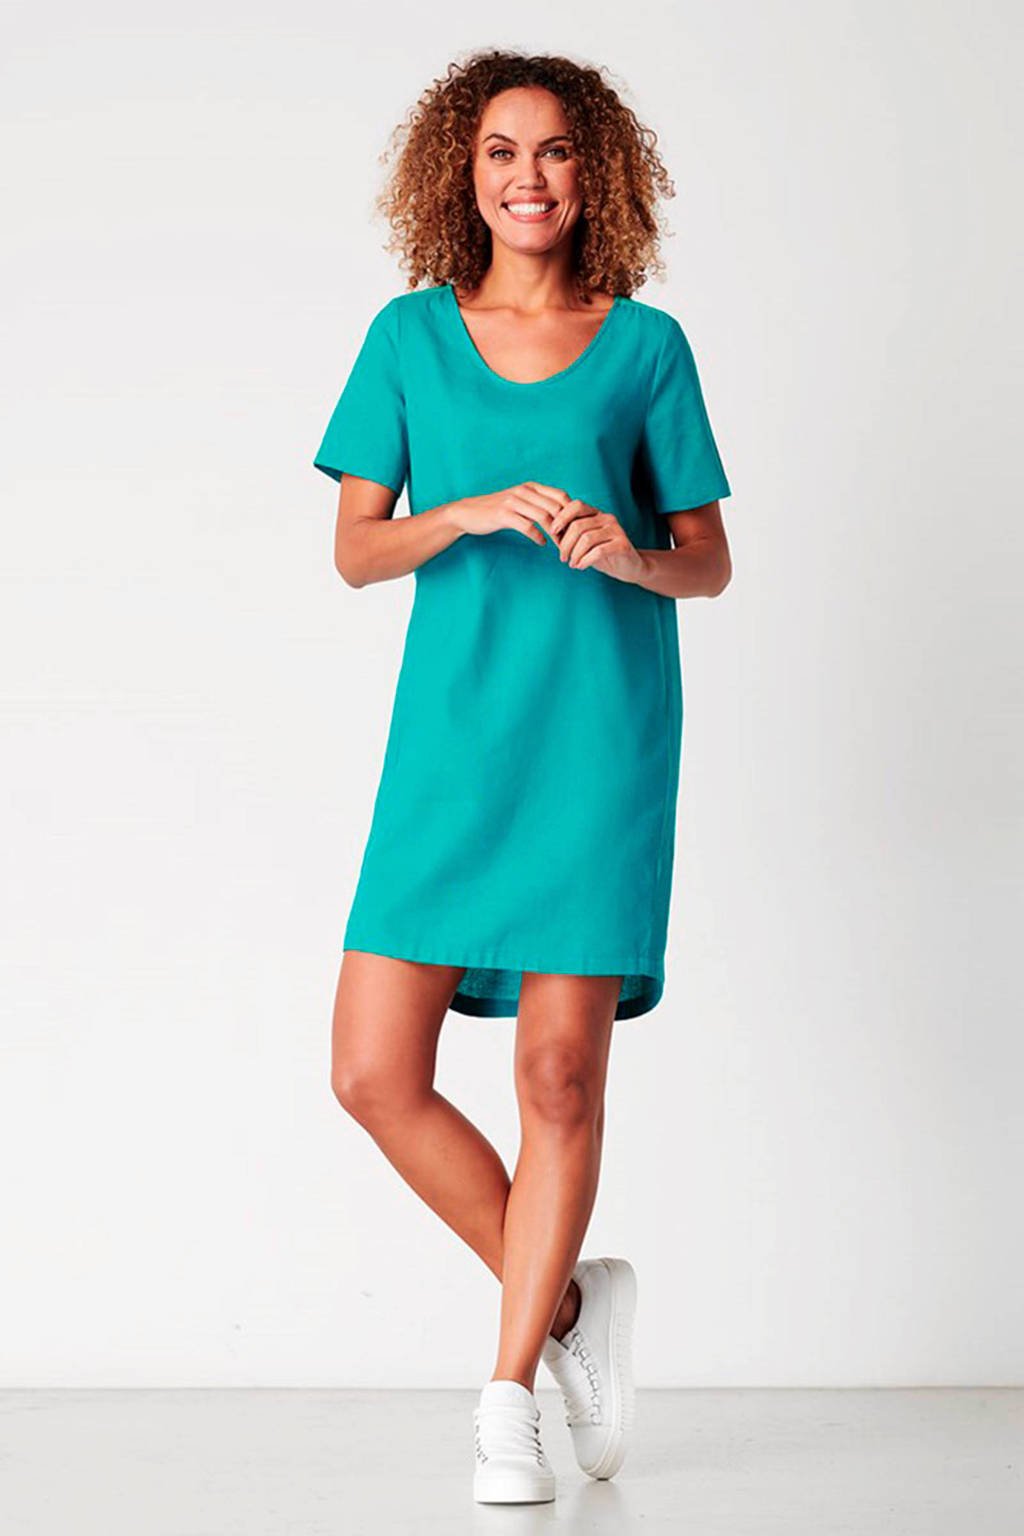 vermogen Hoopvol onderbreken La Ligna jurk met linnen turquoise | wehkamp